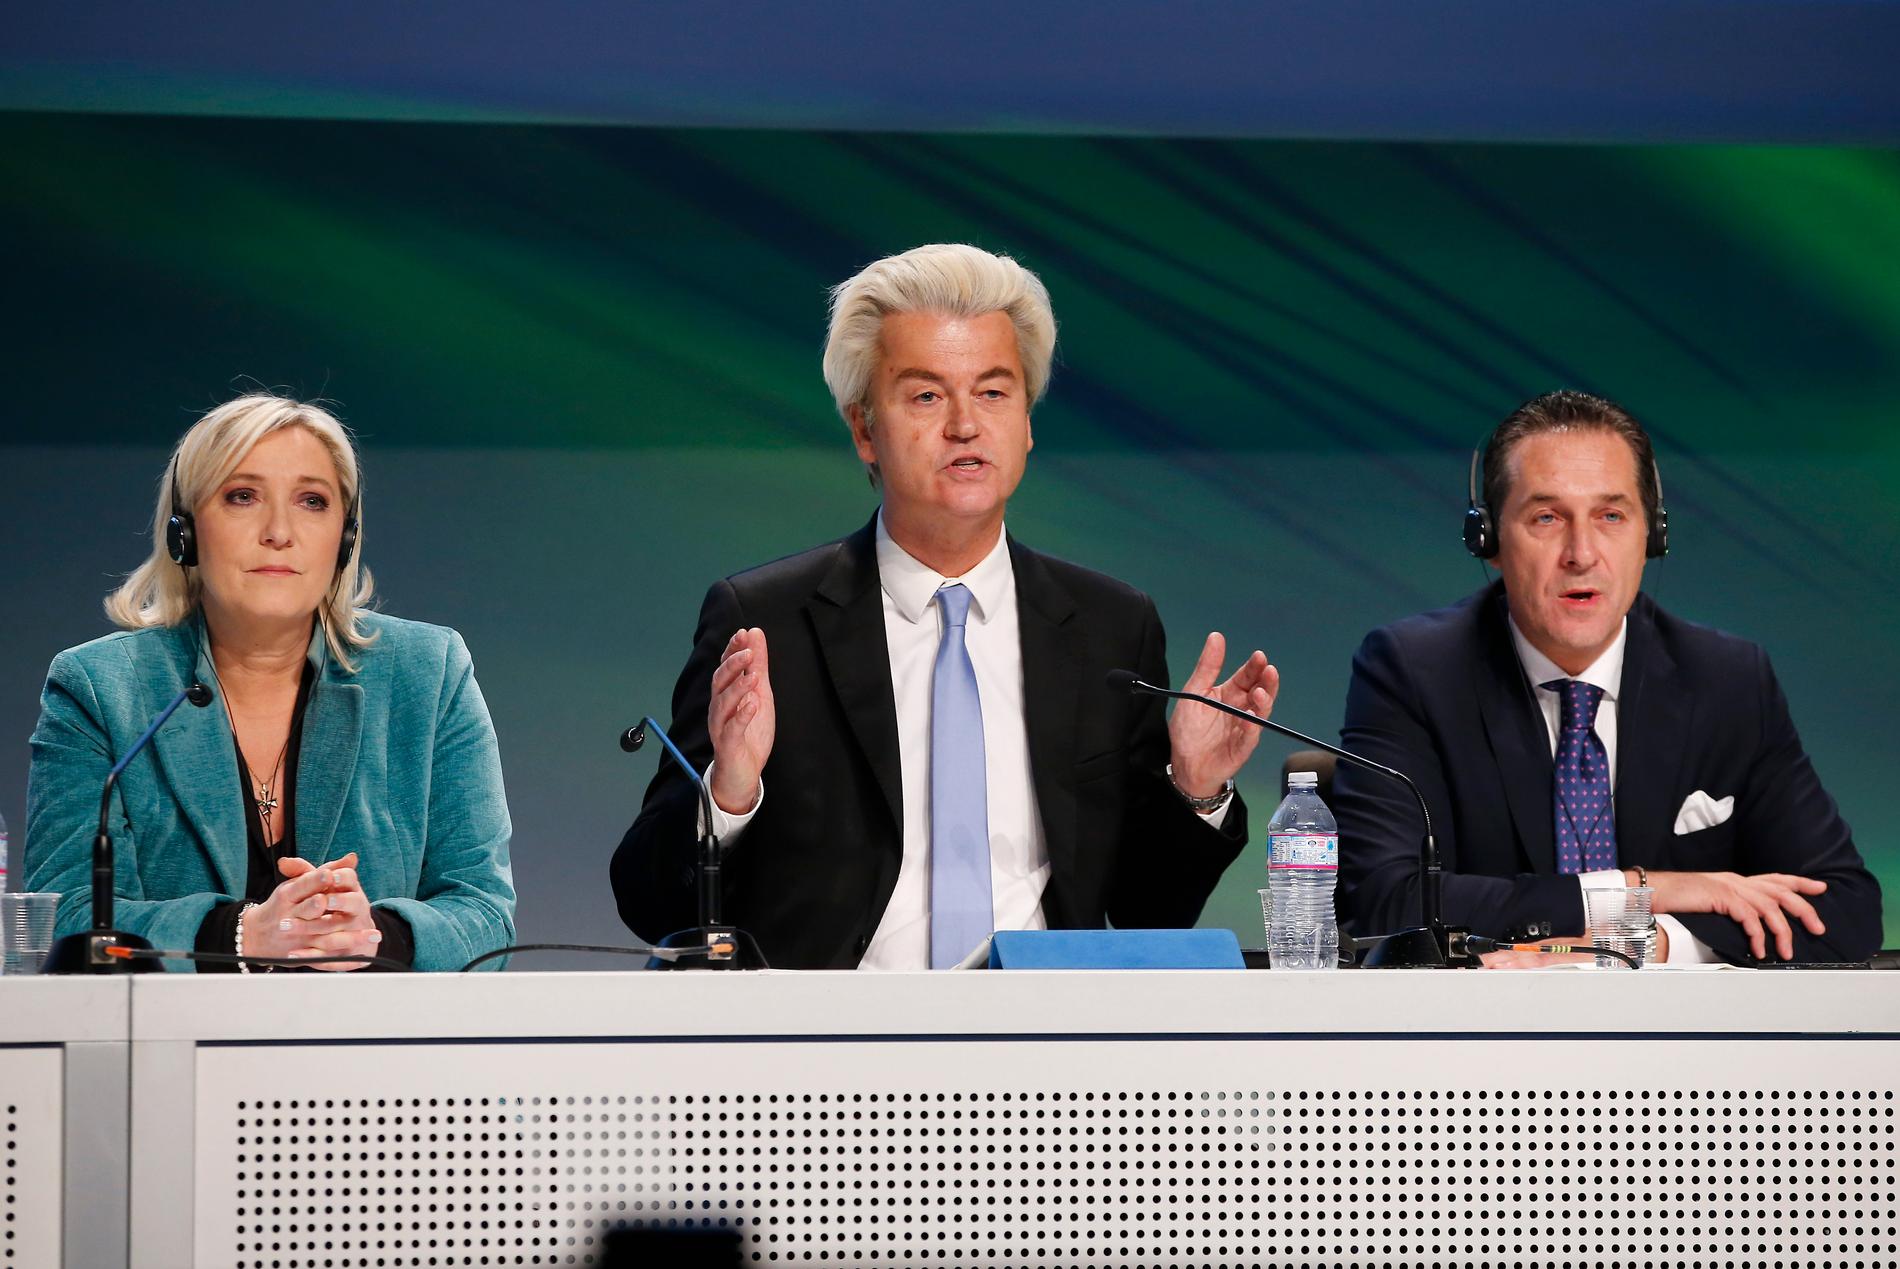 Marine Le Pen, Geert Wilders och Heinz Christian Strache, den extrema högern från Frankrike, Nederländerna och Österrike.